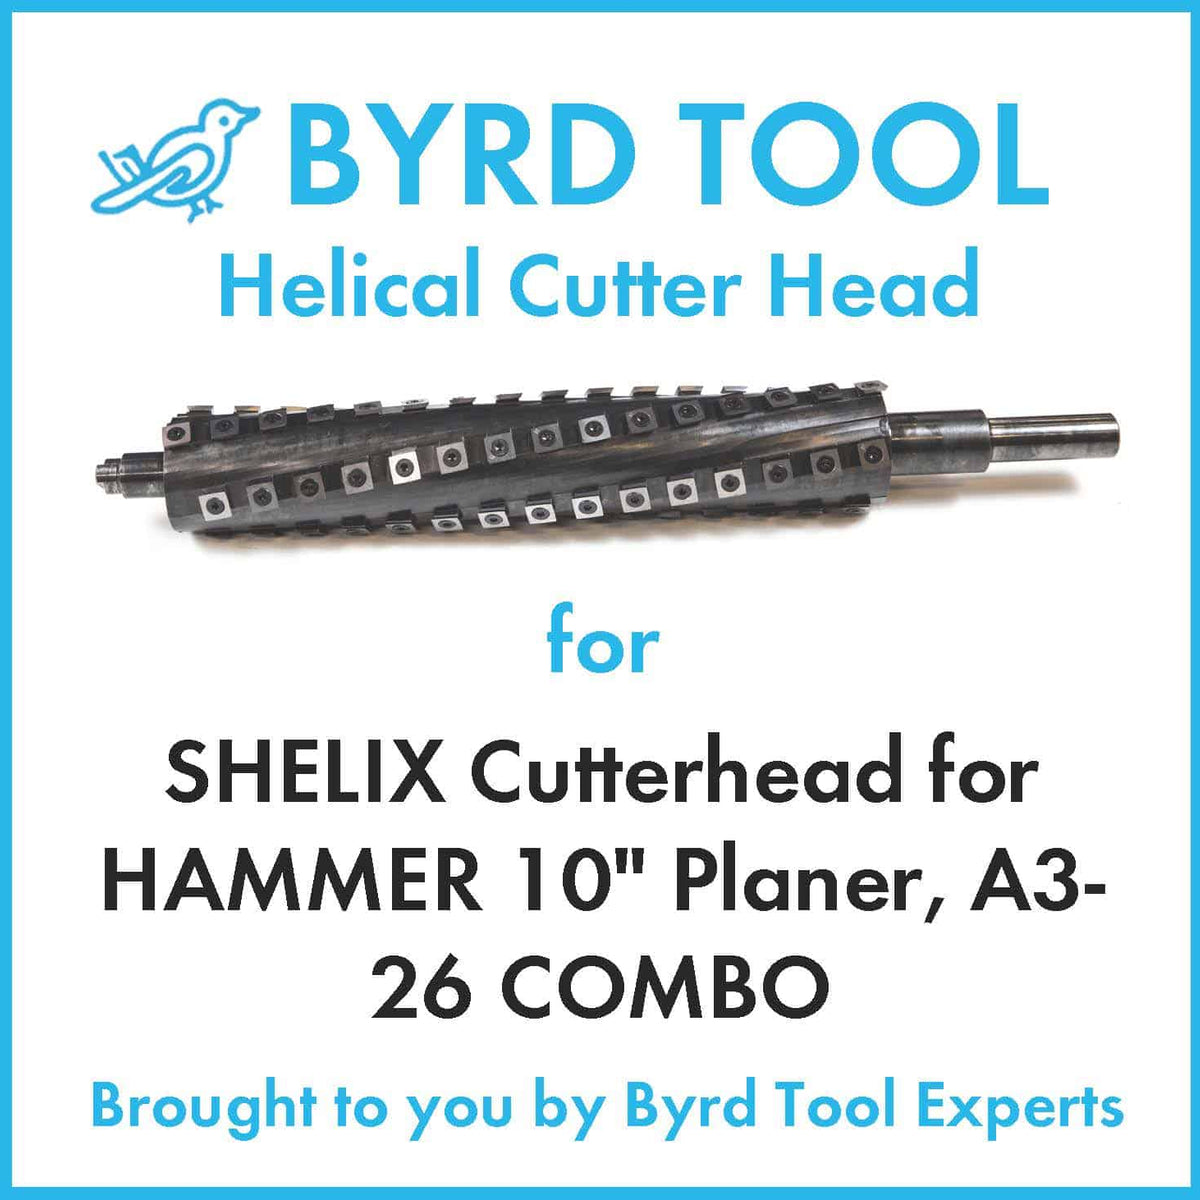 SHELIX Cutterhead for HAMMER 10" Planer